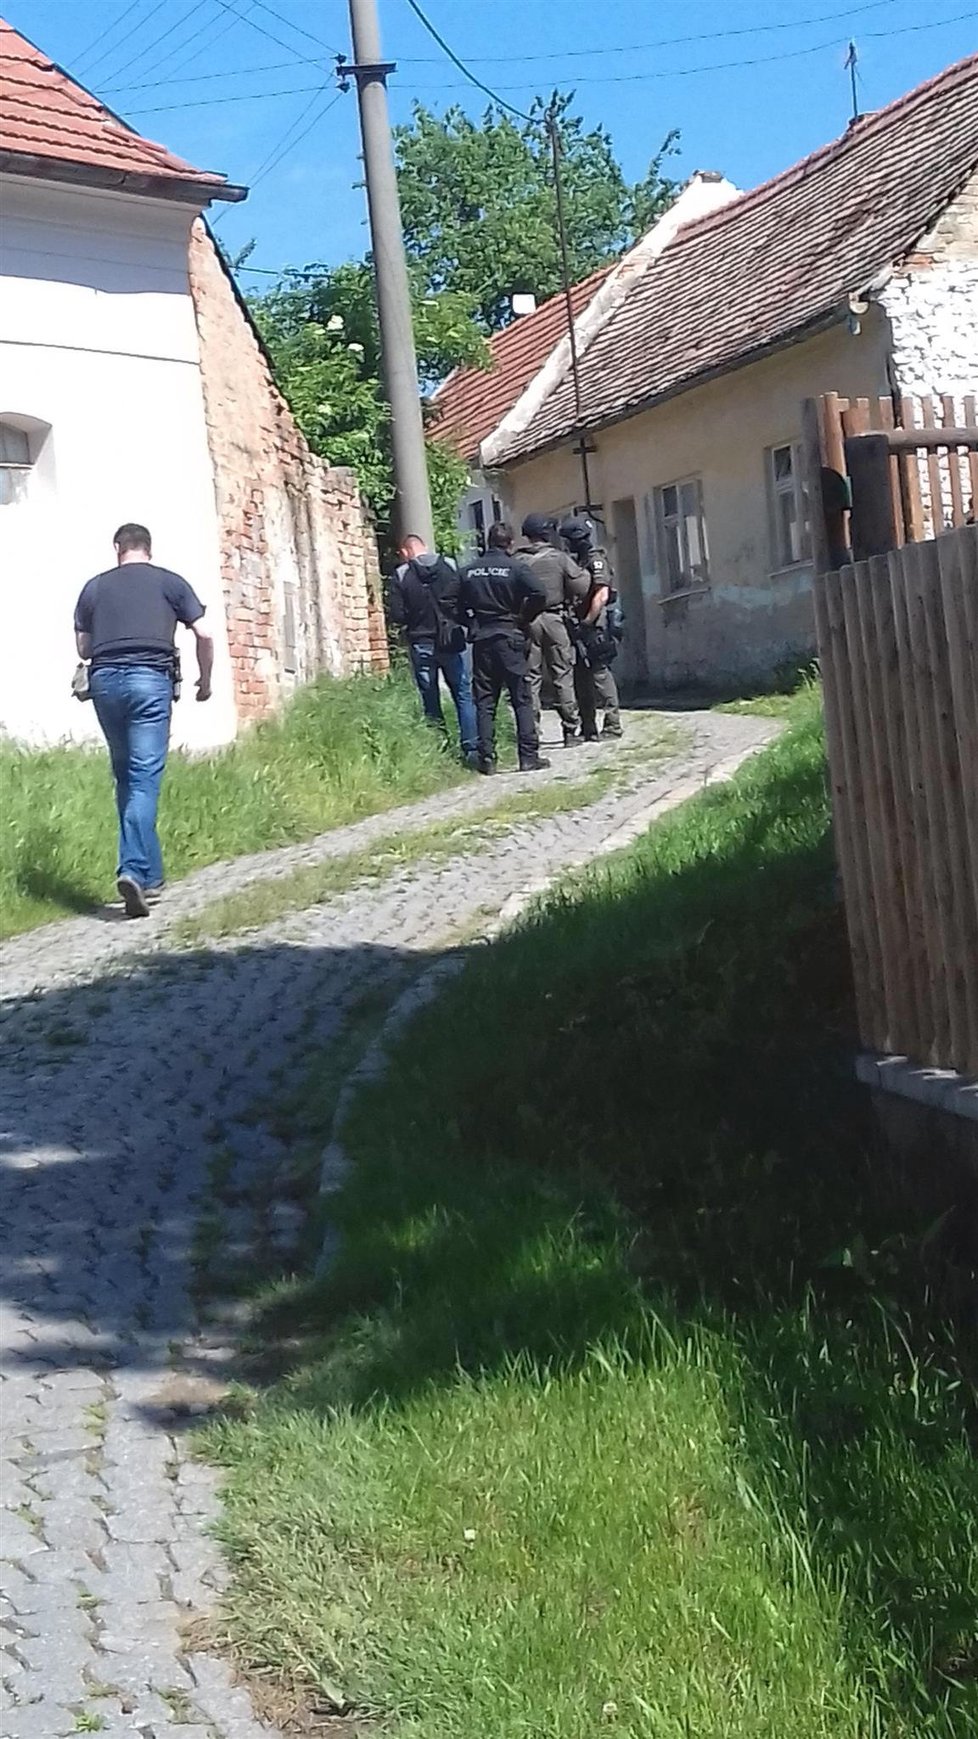 V obci Dražůvky na Hodonínsku zasahuje policie. Muž tu měl postřelit údajně místostarostu a pak se zabarikádovat v domě.